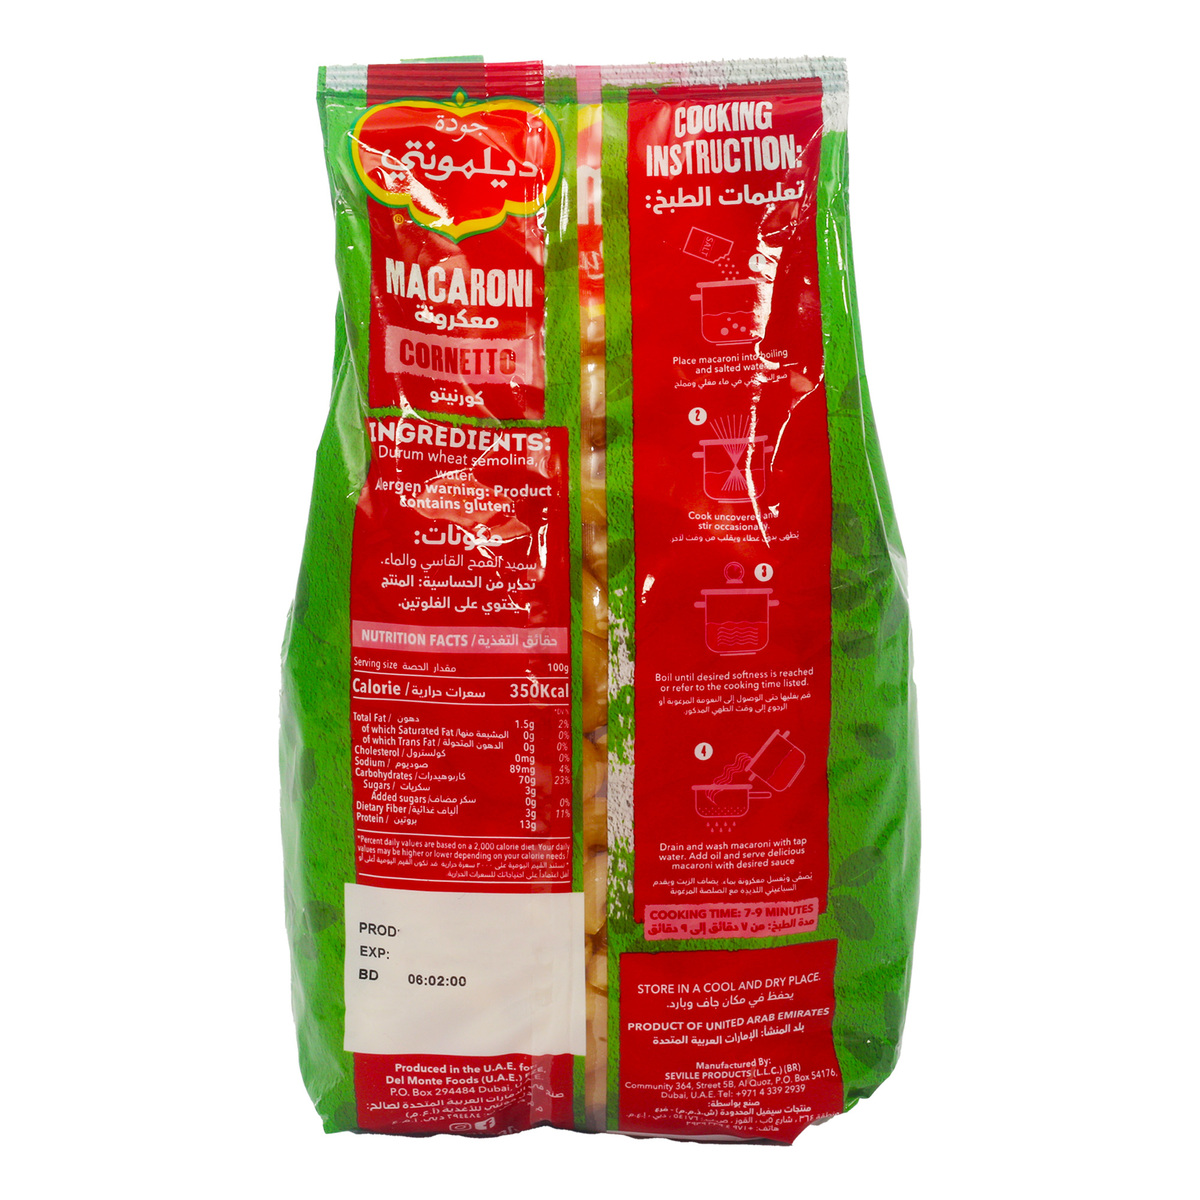 Del Monte Macaroni Cornetto Rigate Value Pack 3 x 400 g